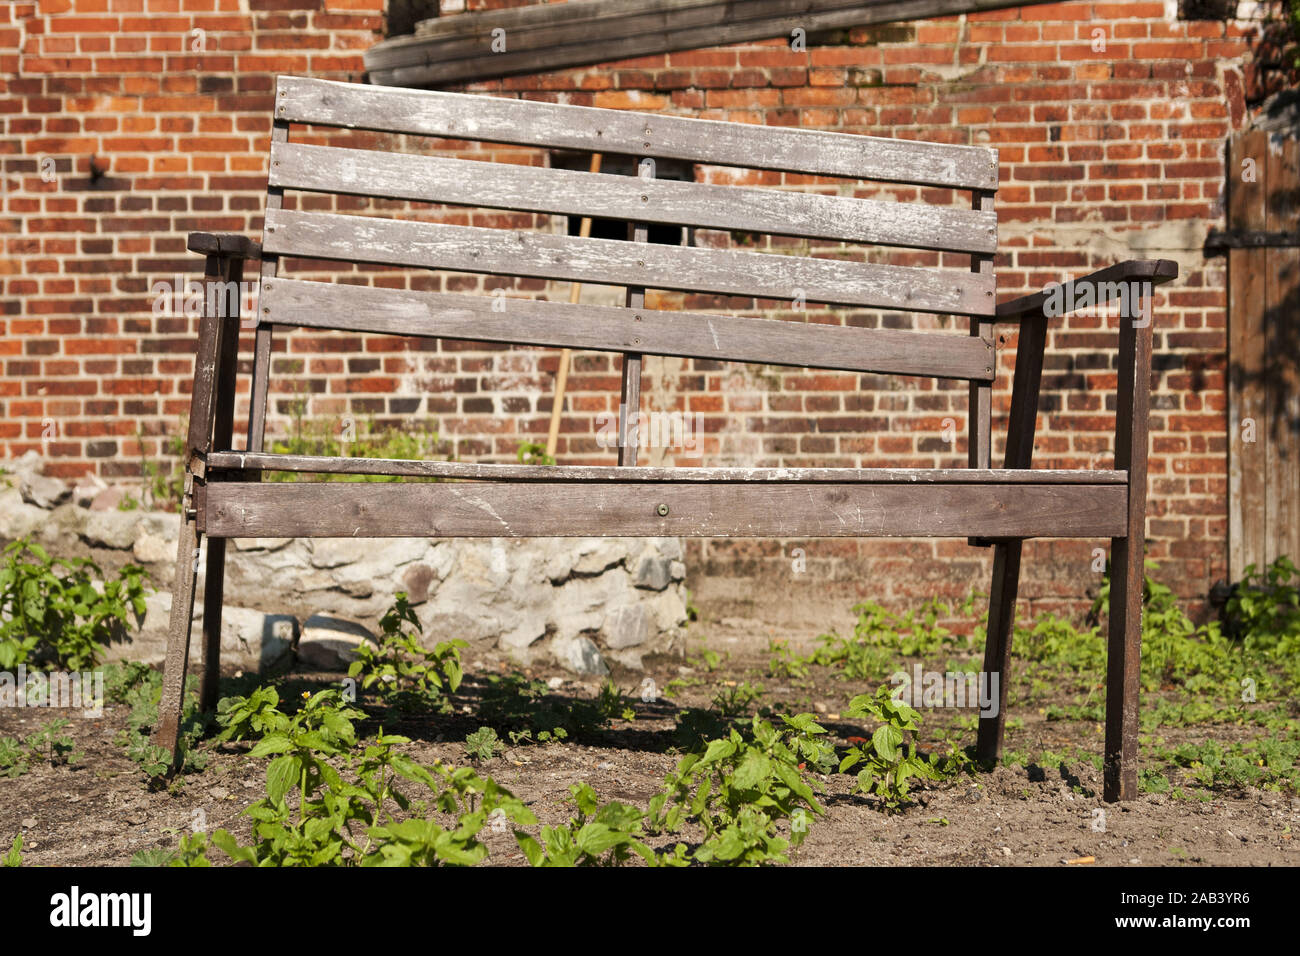 Alte Gartenbank in einem Vorgarten |Old garden bench in a garden| Stock Photo